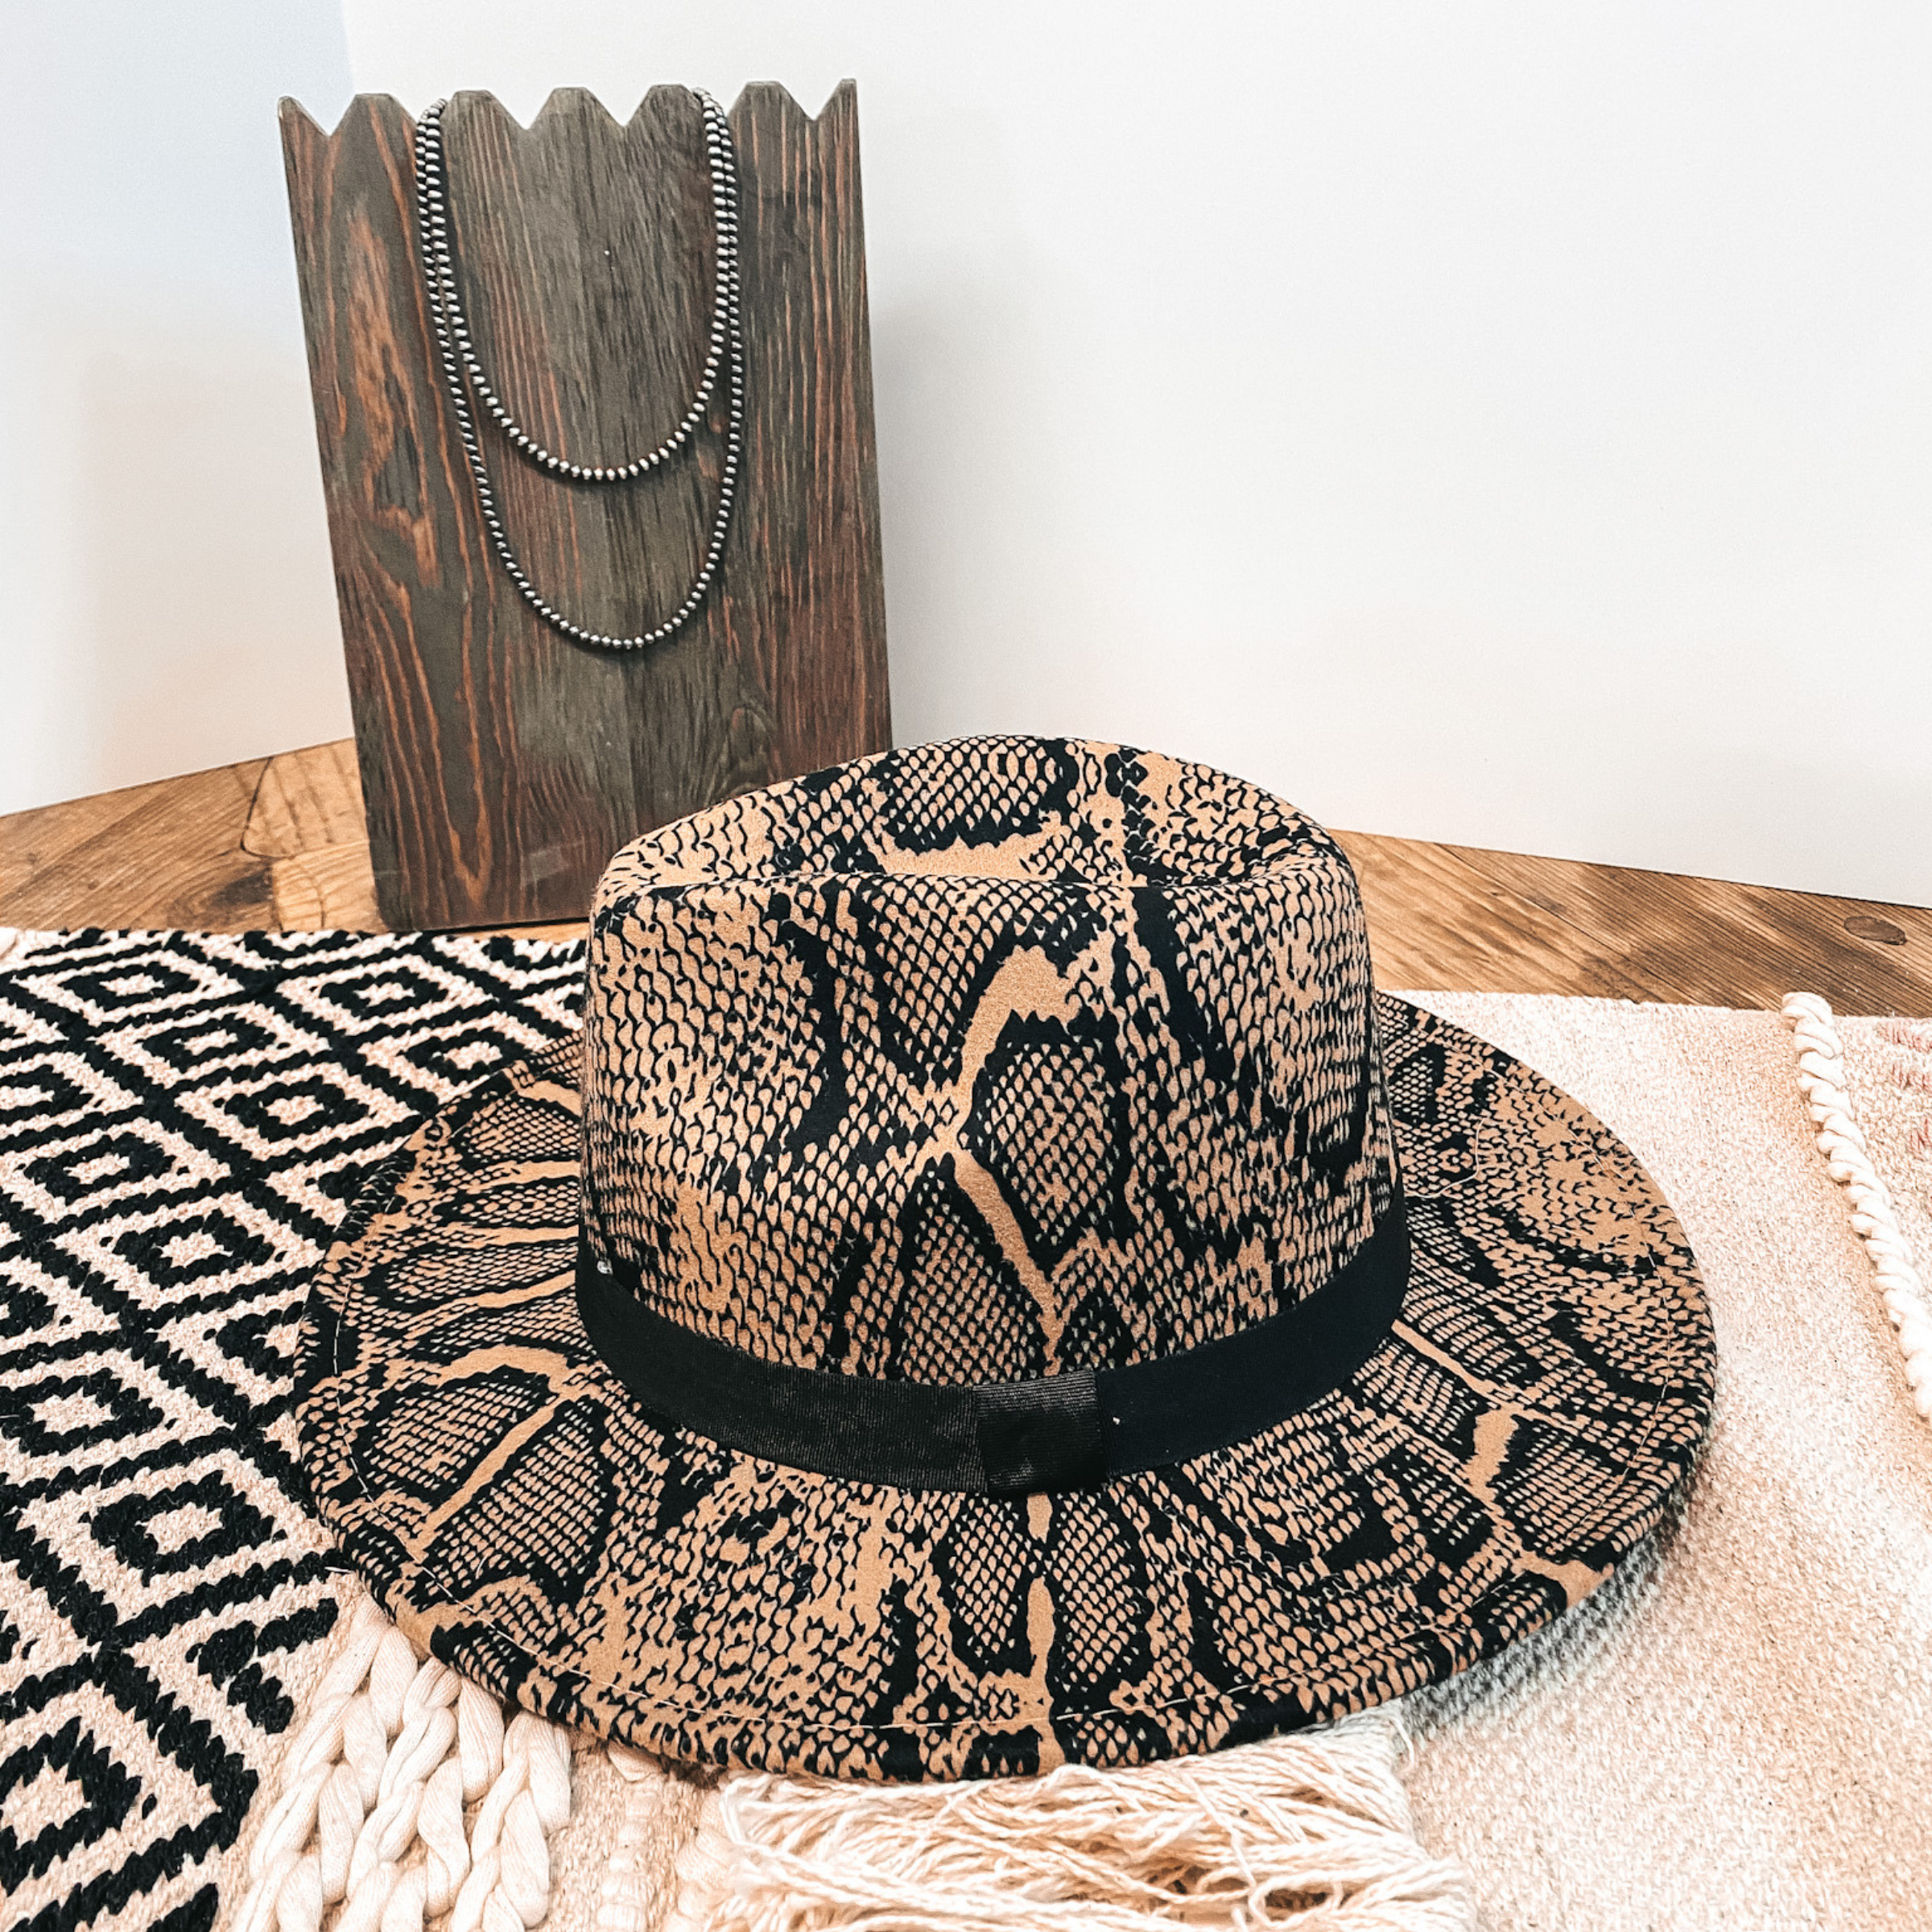 Wild Adventure Flat Brim Hat in Snake Print